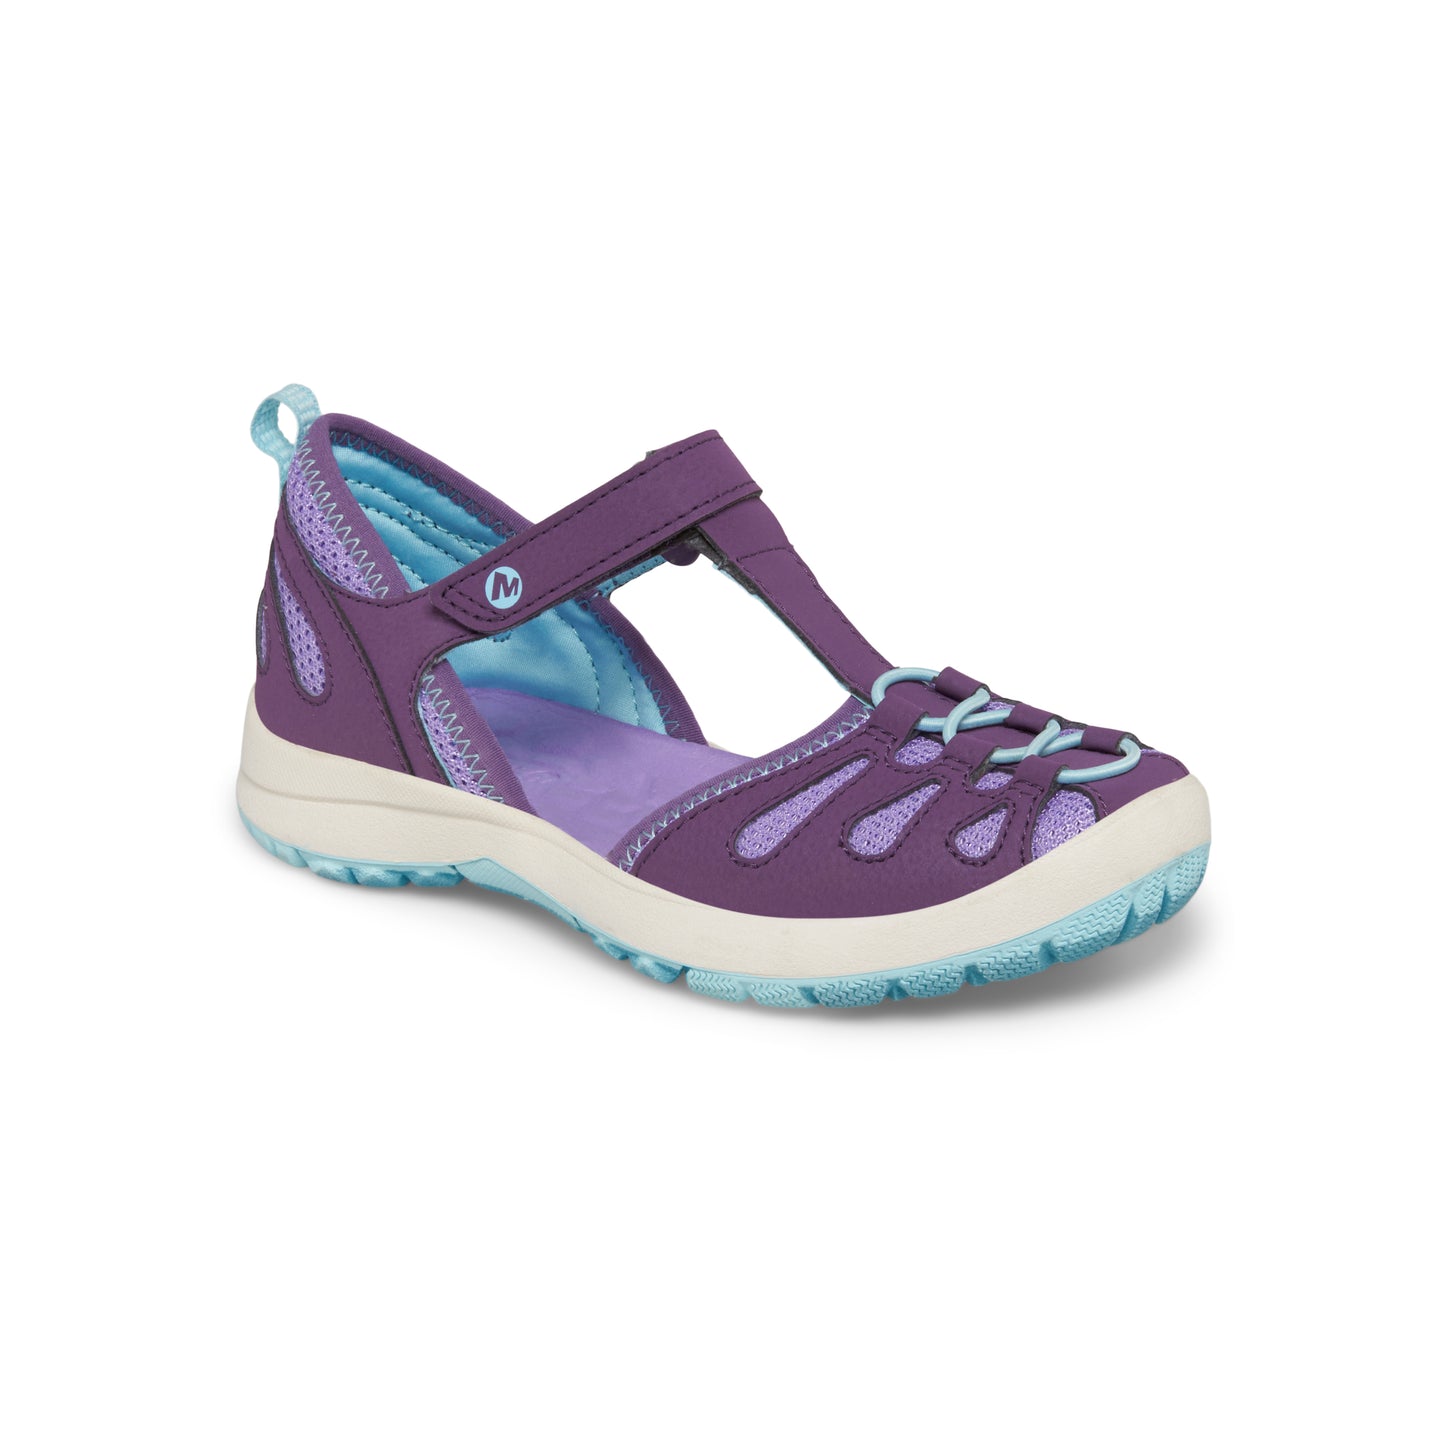 hydro-lily-sandal-bigkid-purple-ice-blue__Purple/Ice Blue_1